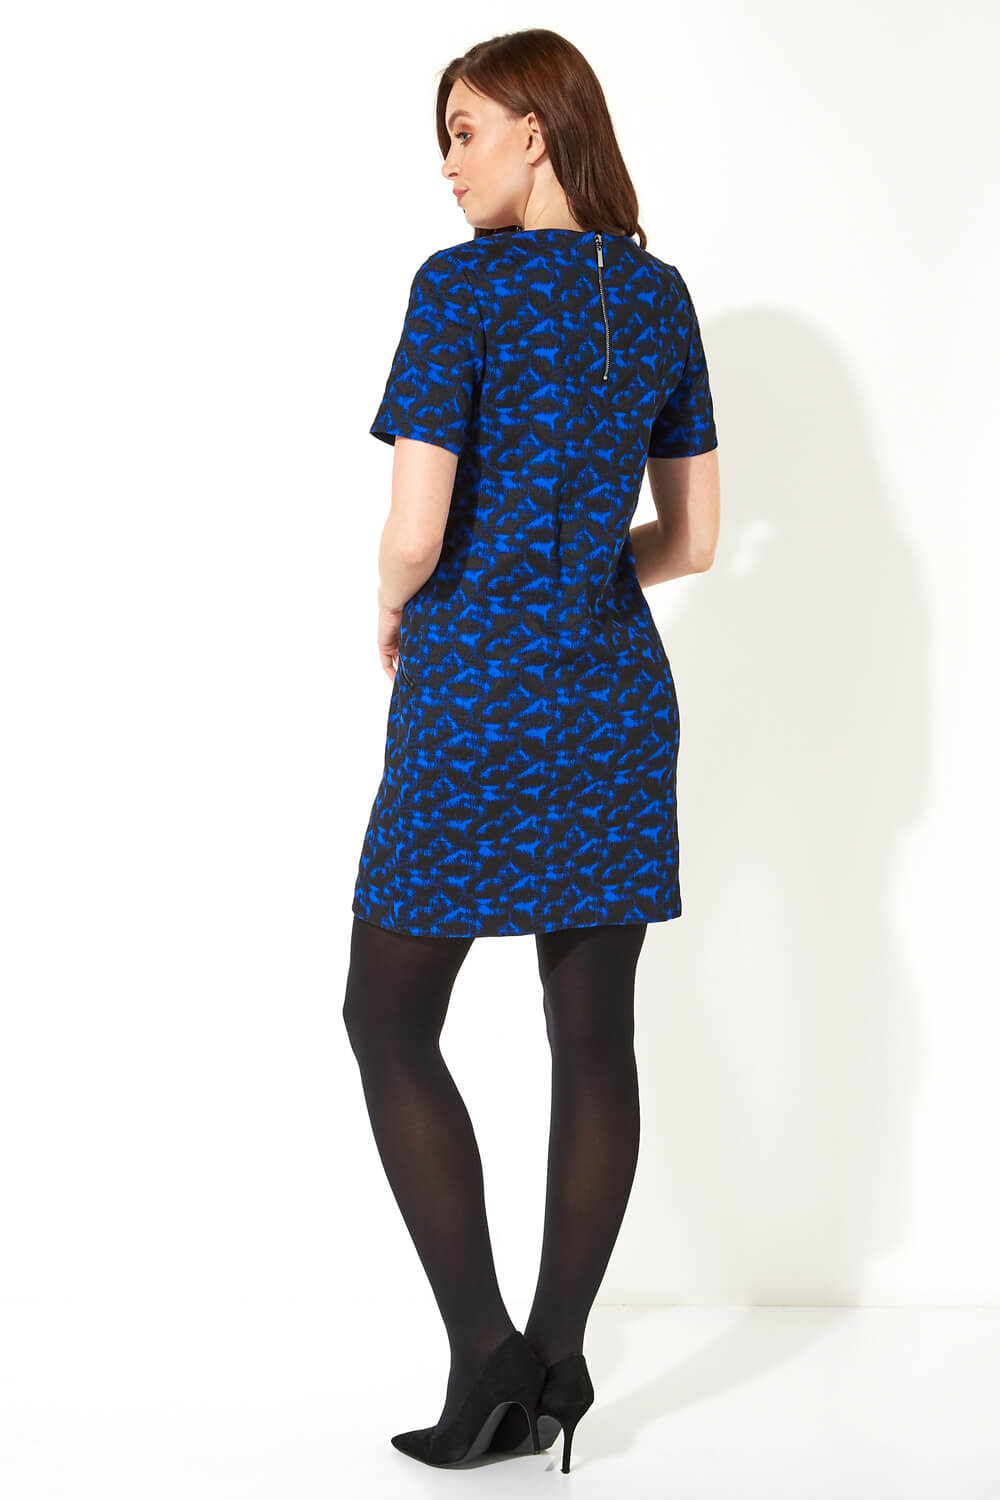 Royal Blue Abstract Zip Pocket Shift Dress, Image 3 of 5